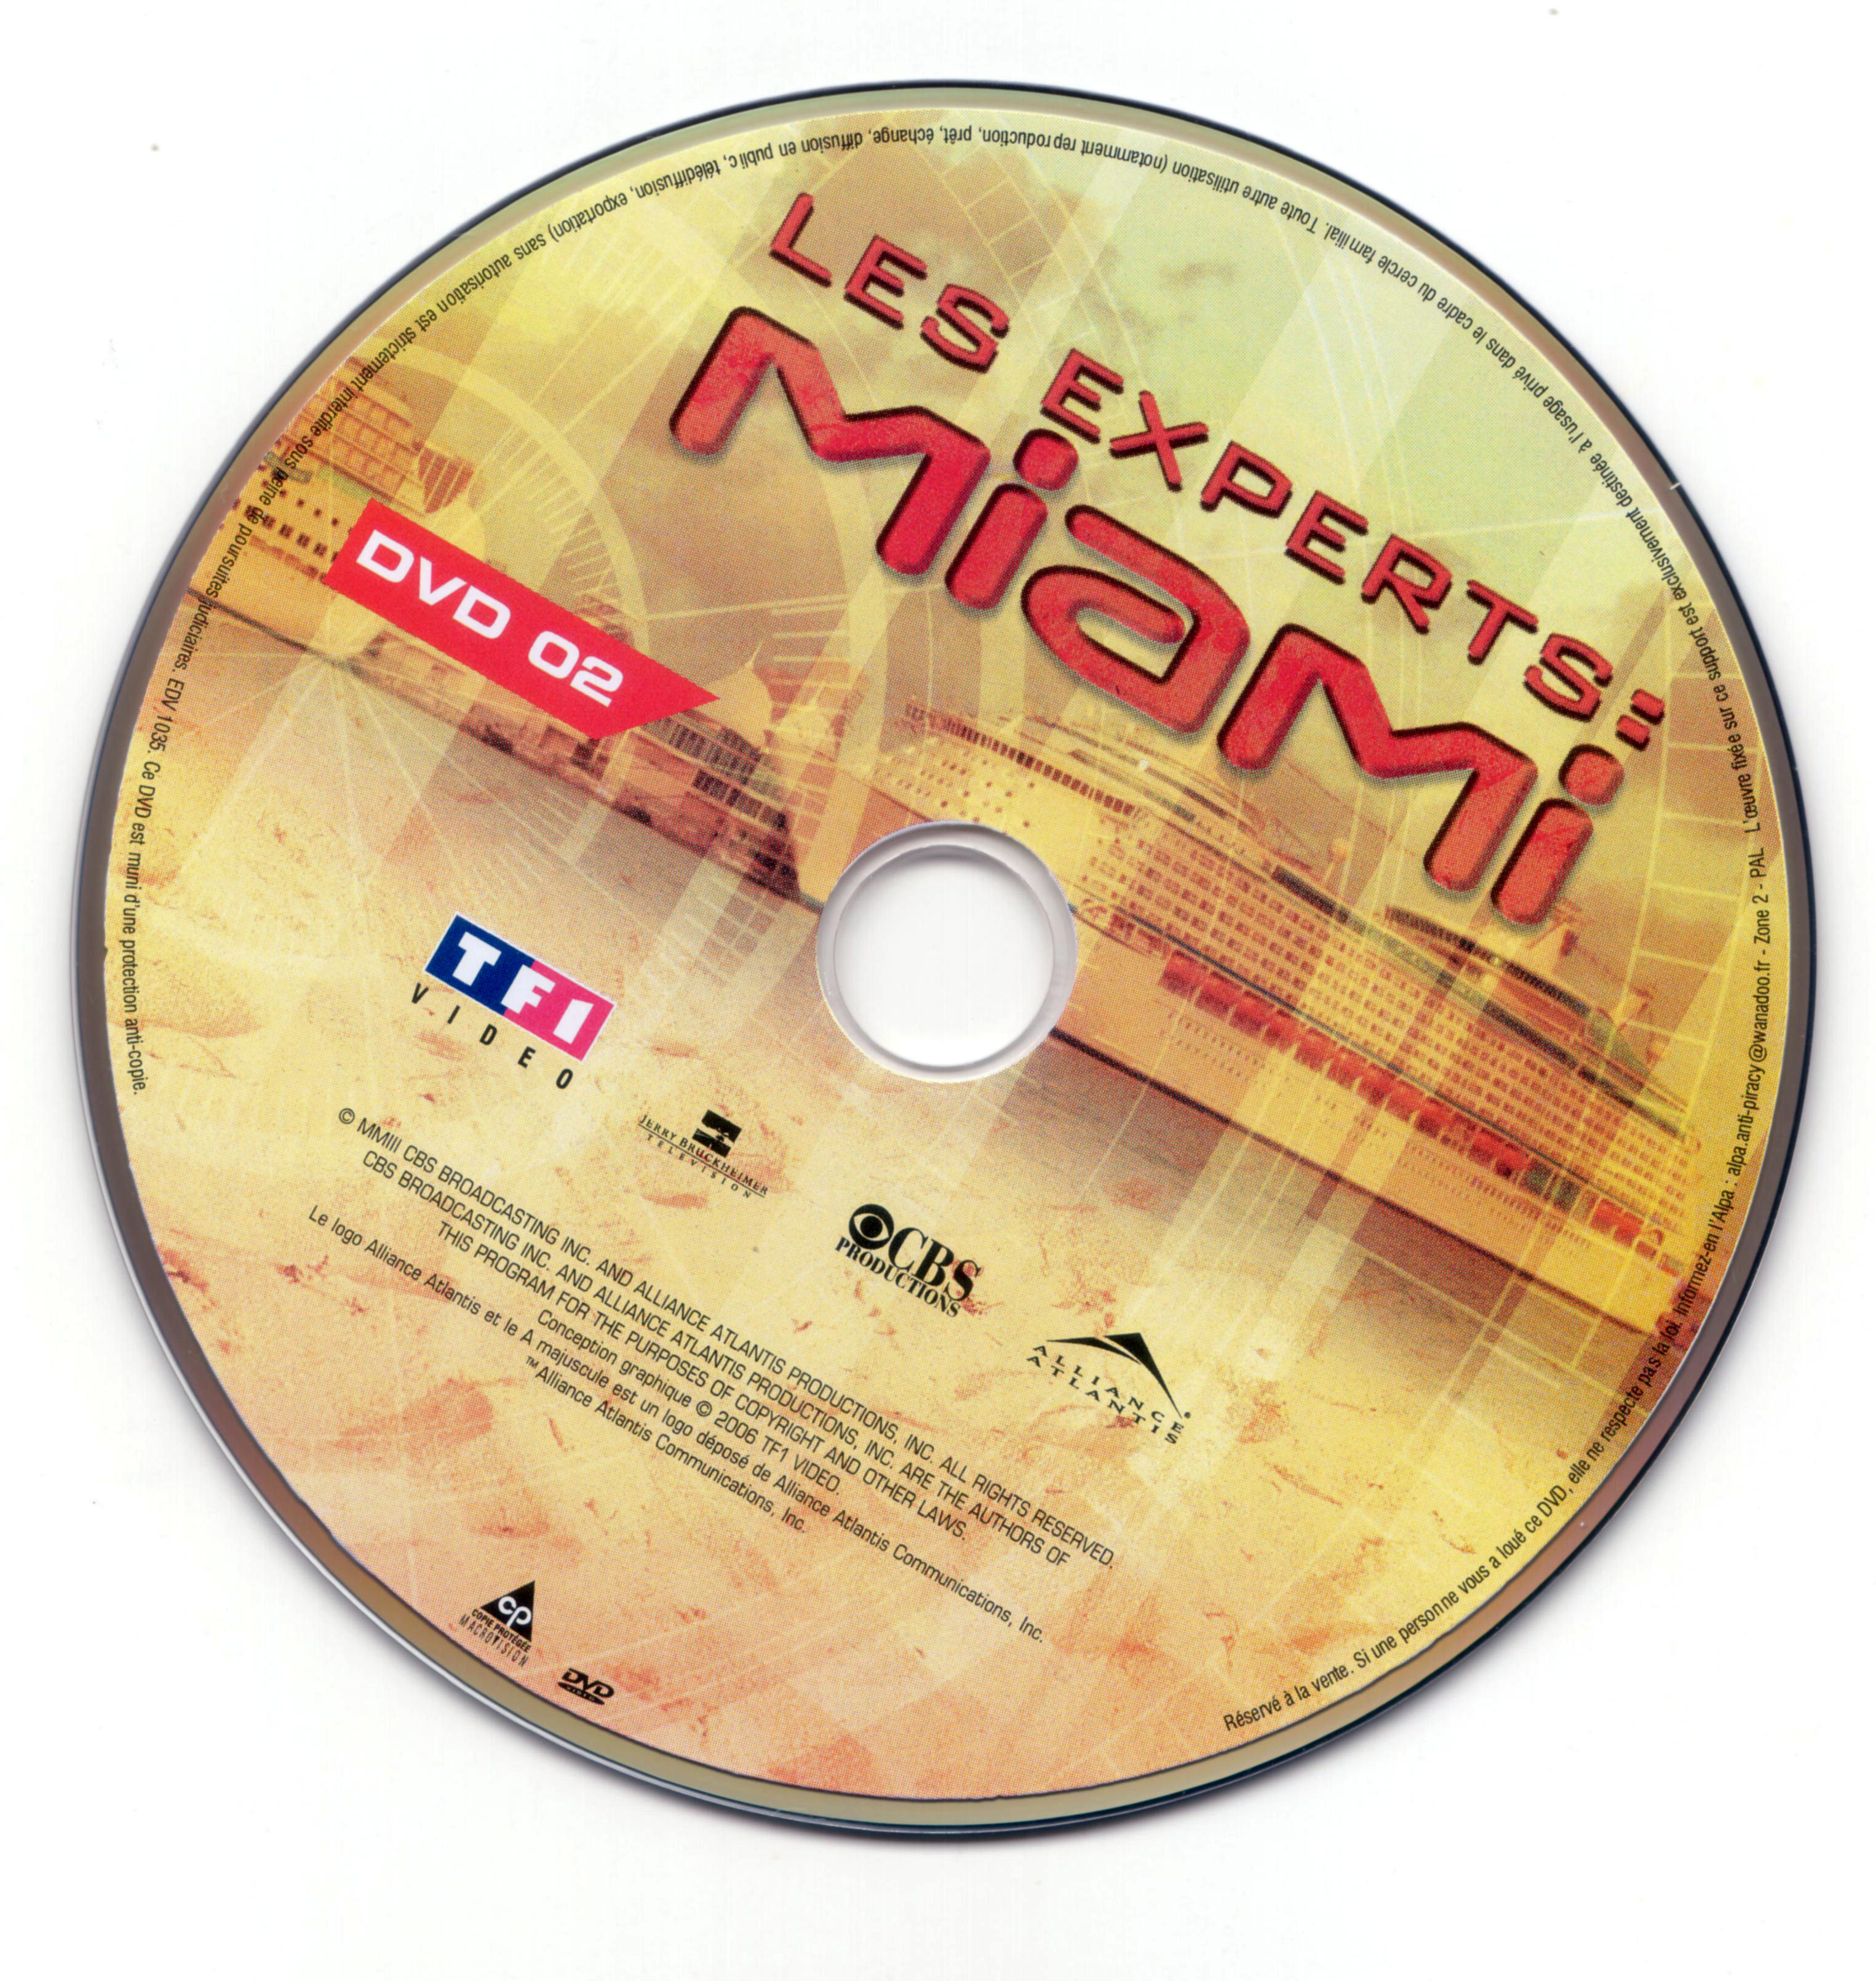 Les experts Miami Saison 2 vol 1 DISC 2